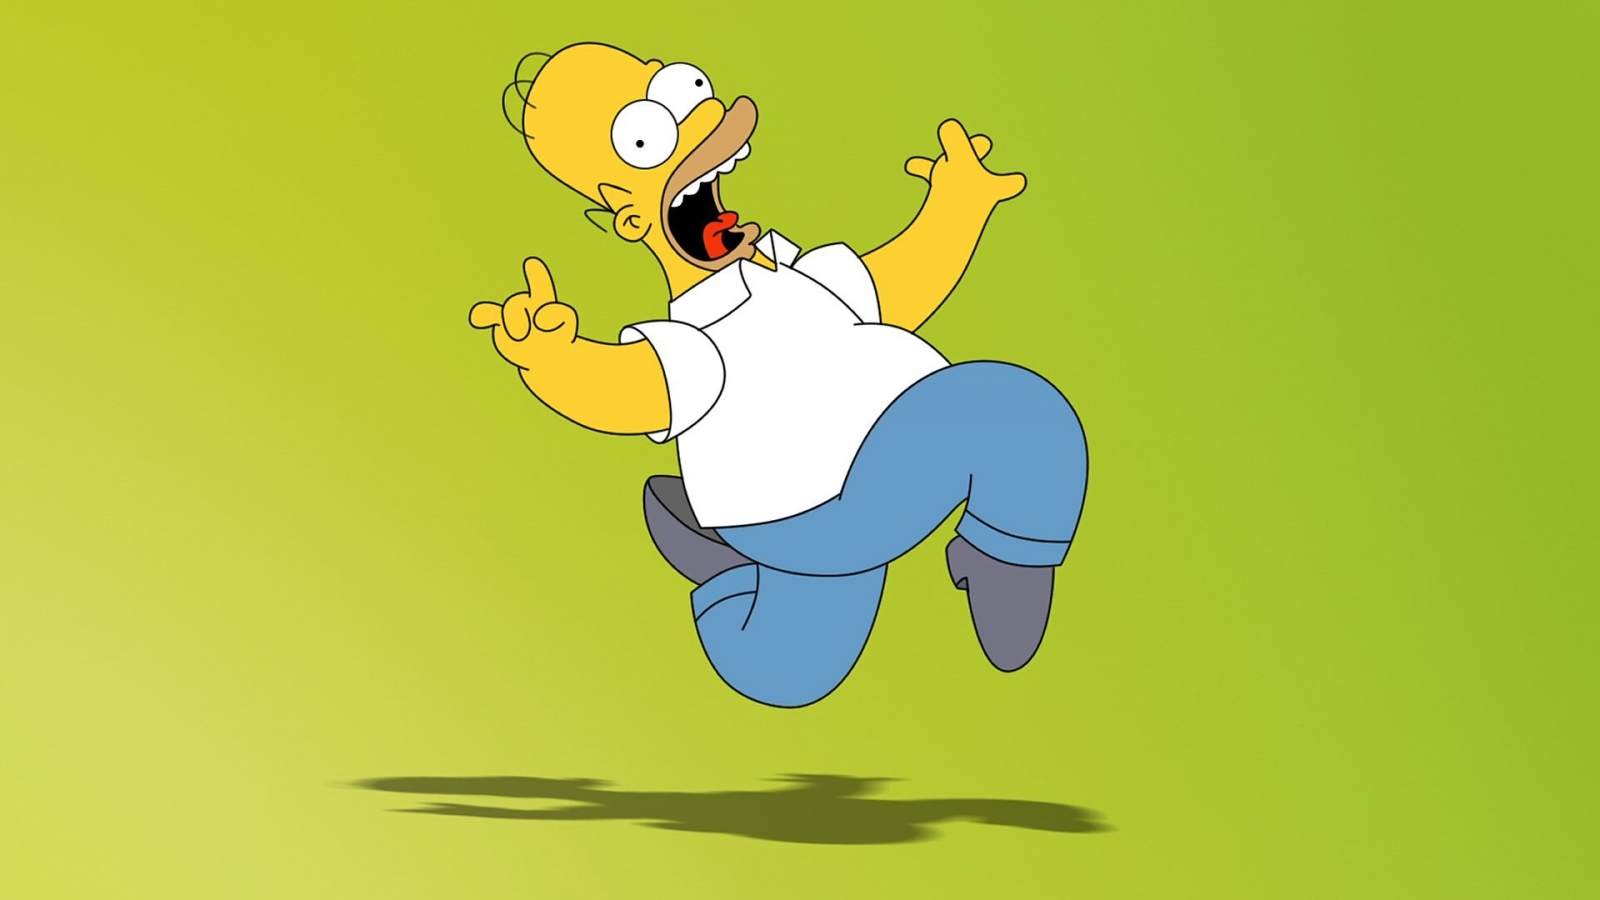 Homer Simpson for 1600 x 900 HDTV resolution